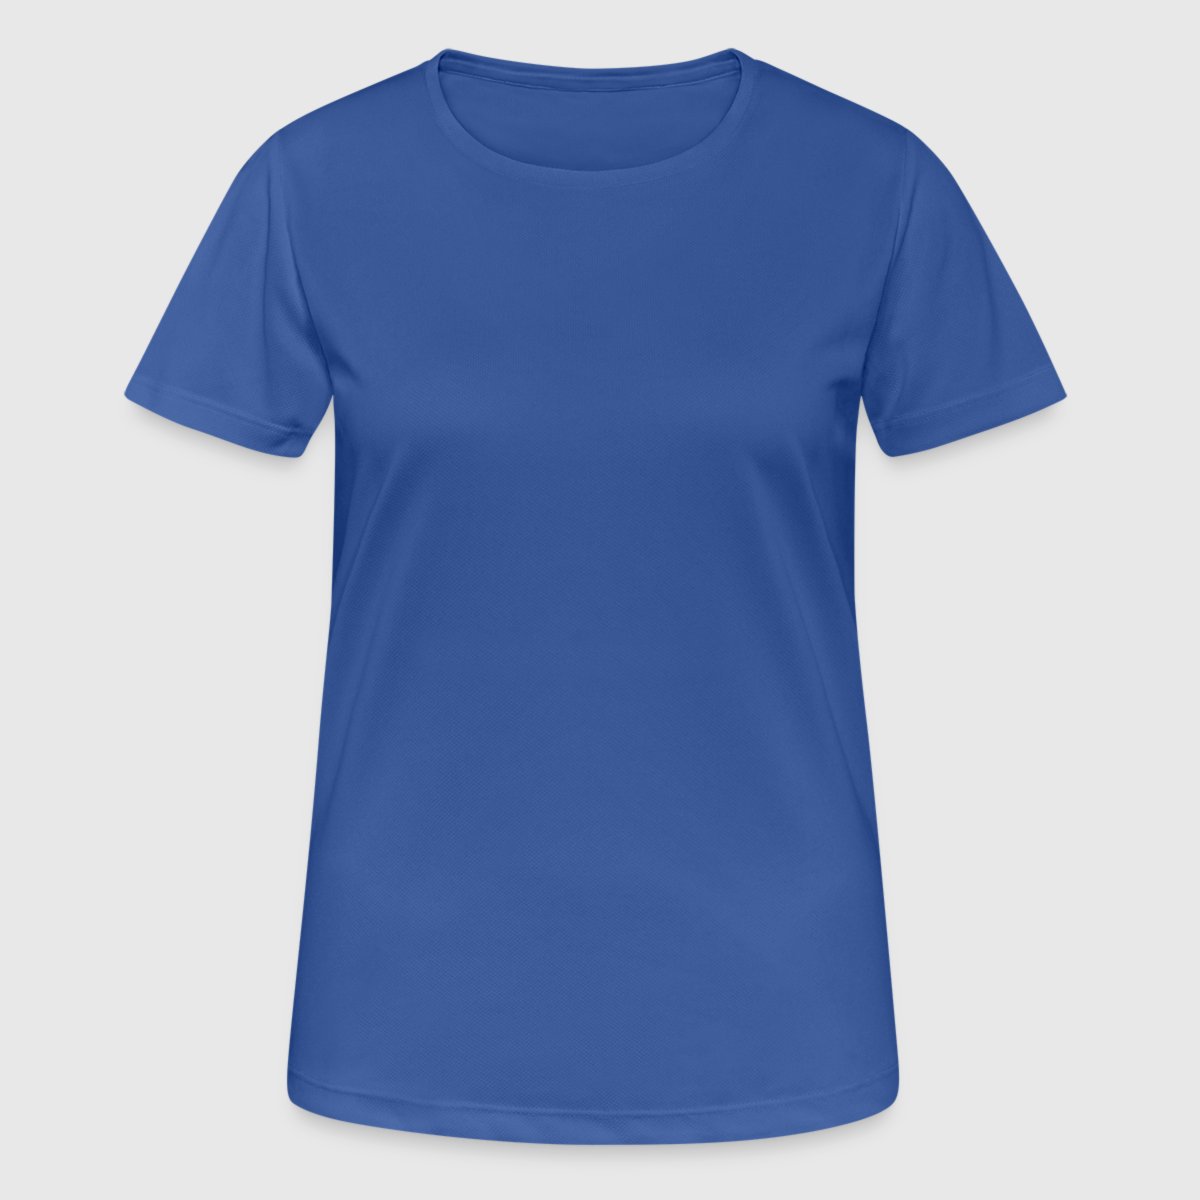 Pustende T-skjorte for kvinner - Foran